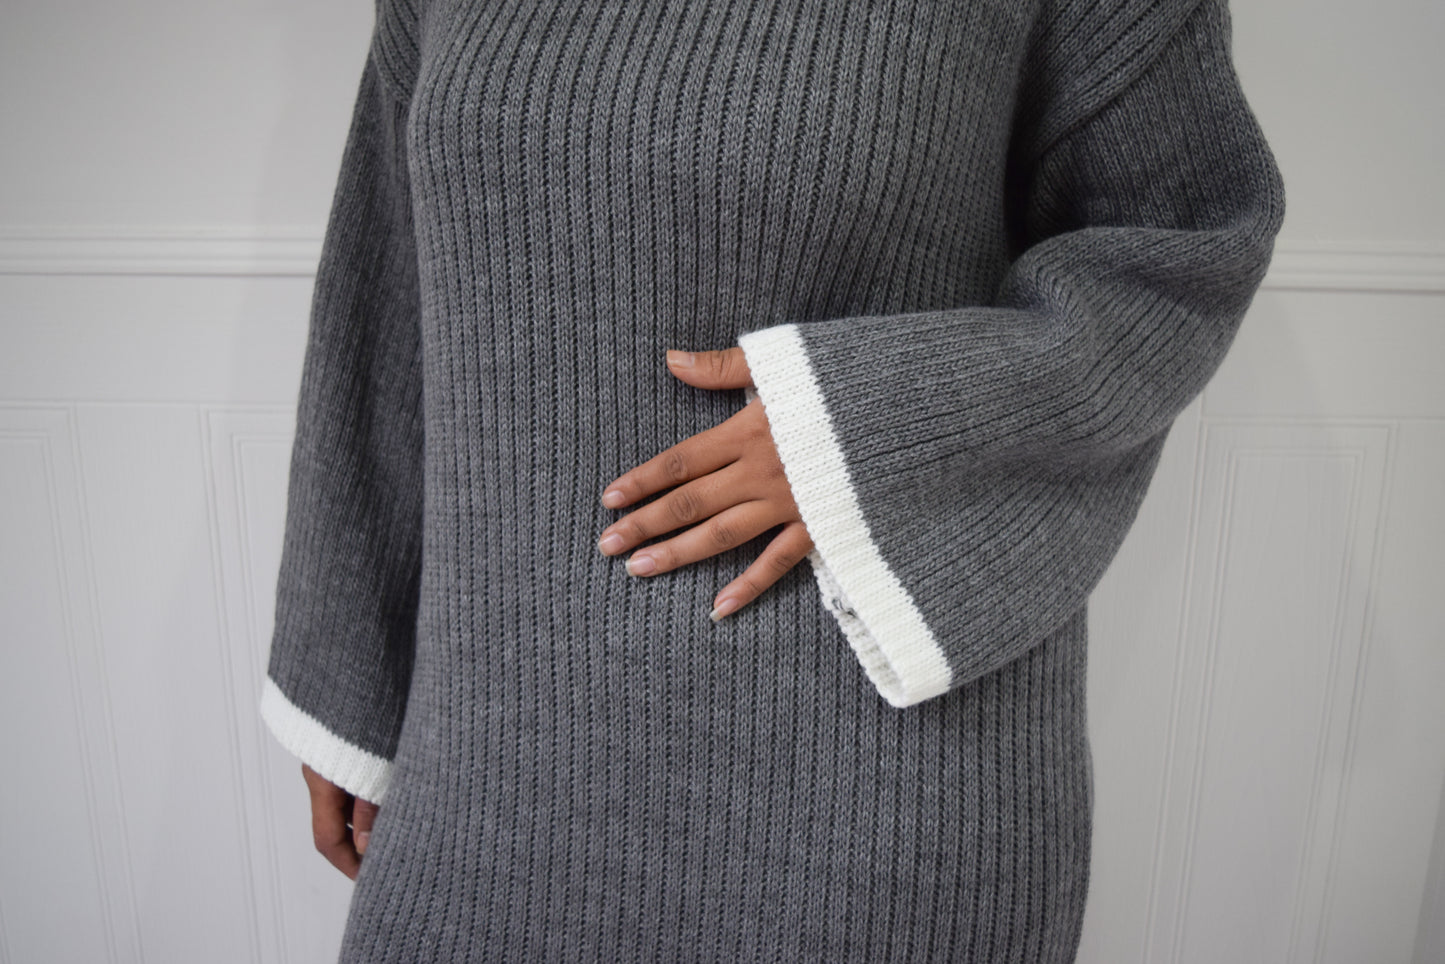 Winter knit dress with Trim Grey